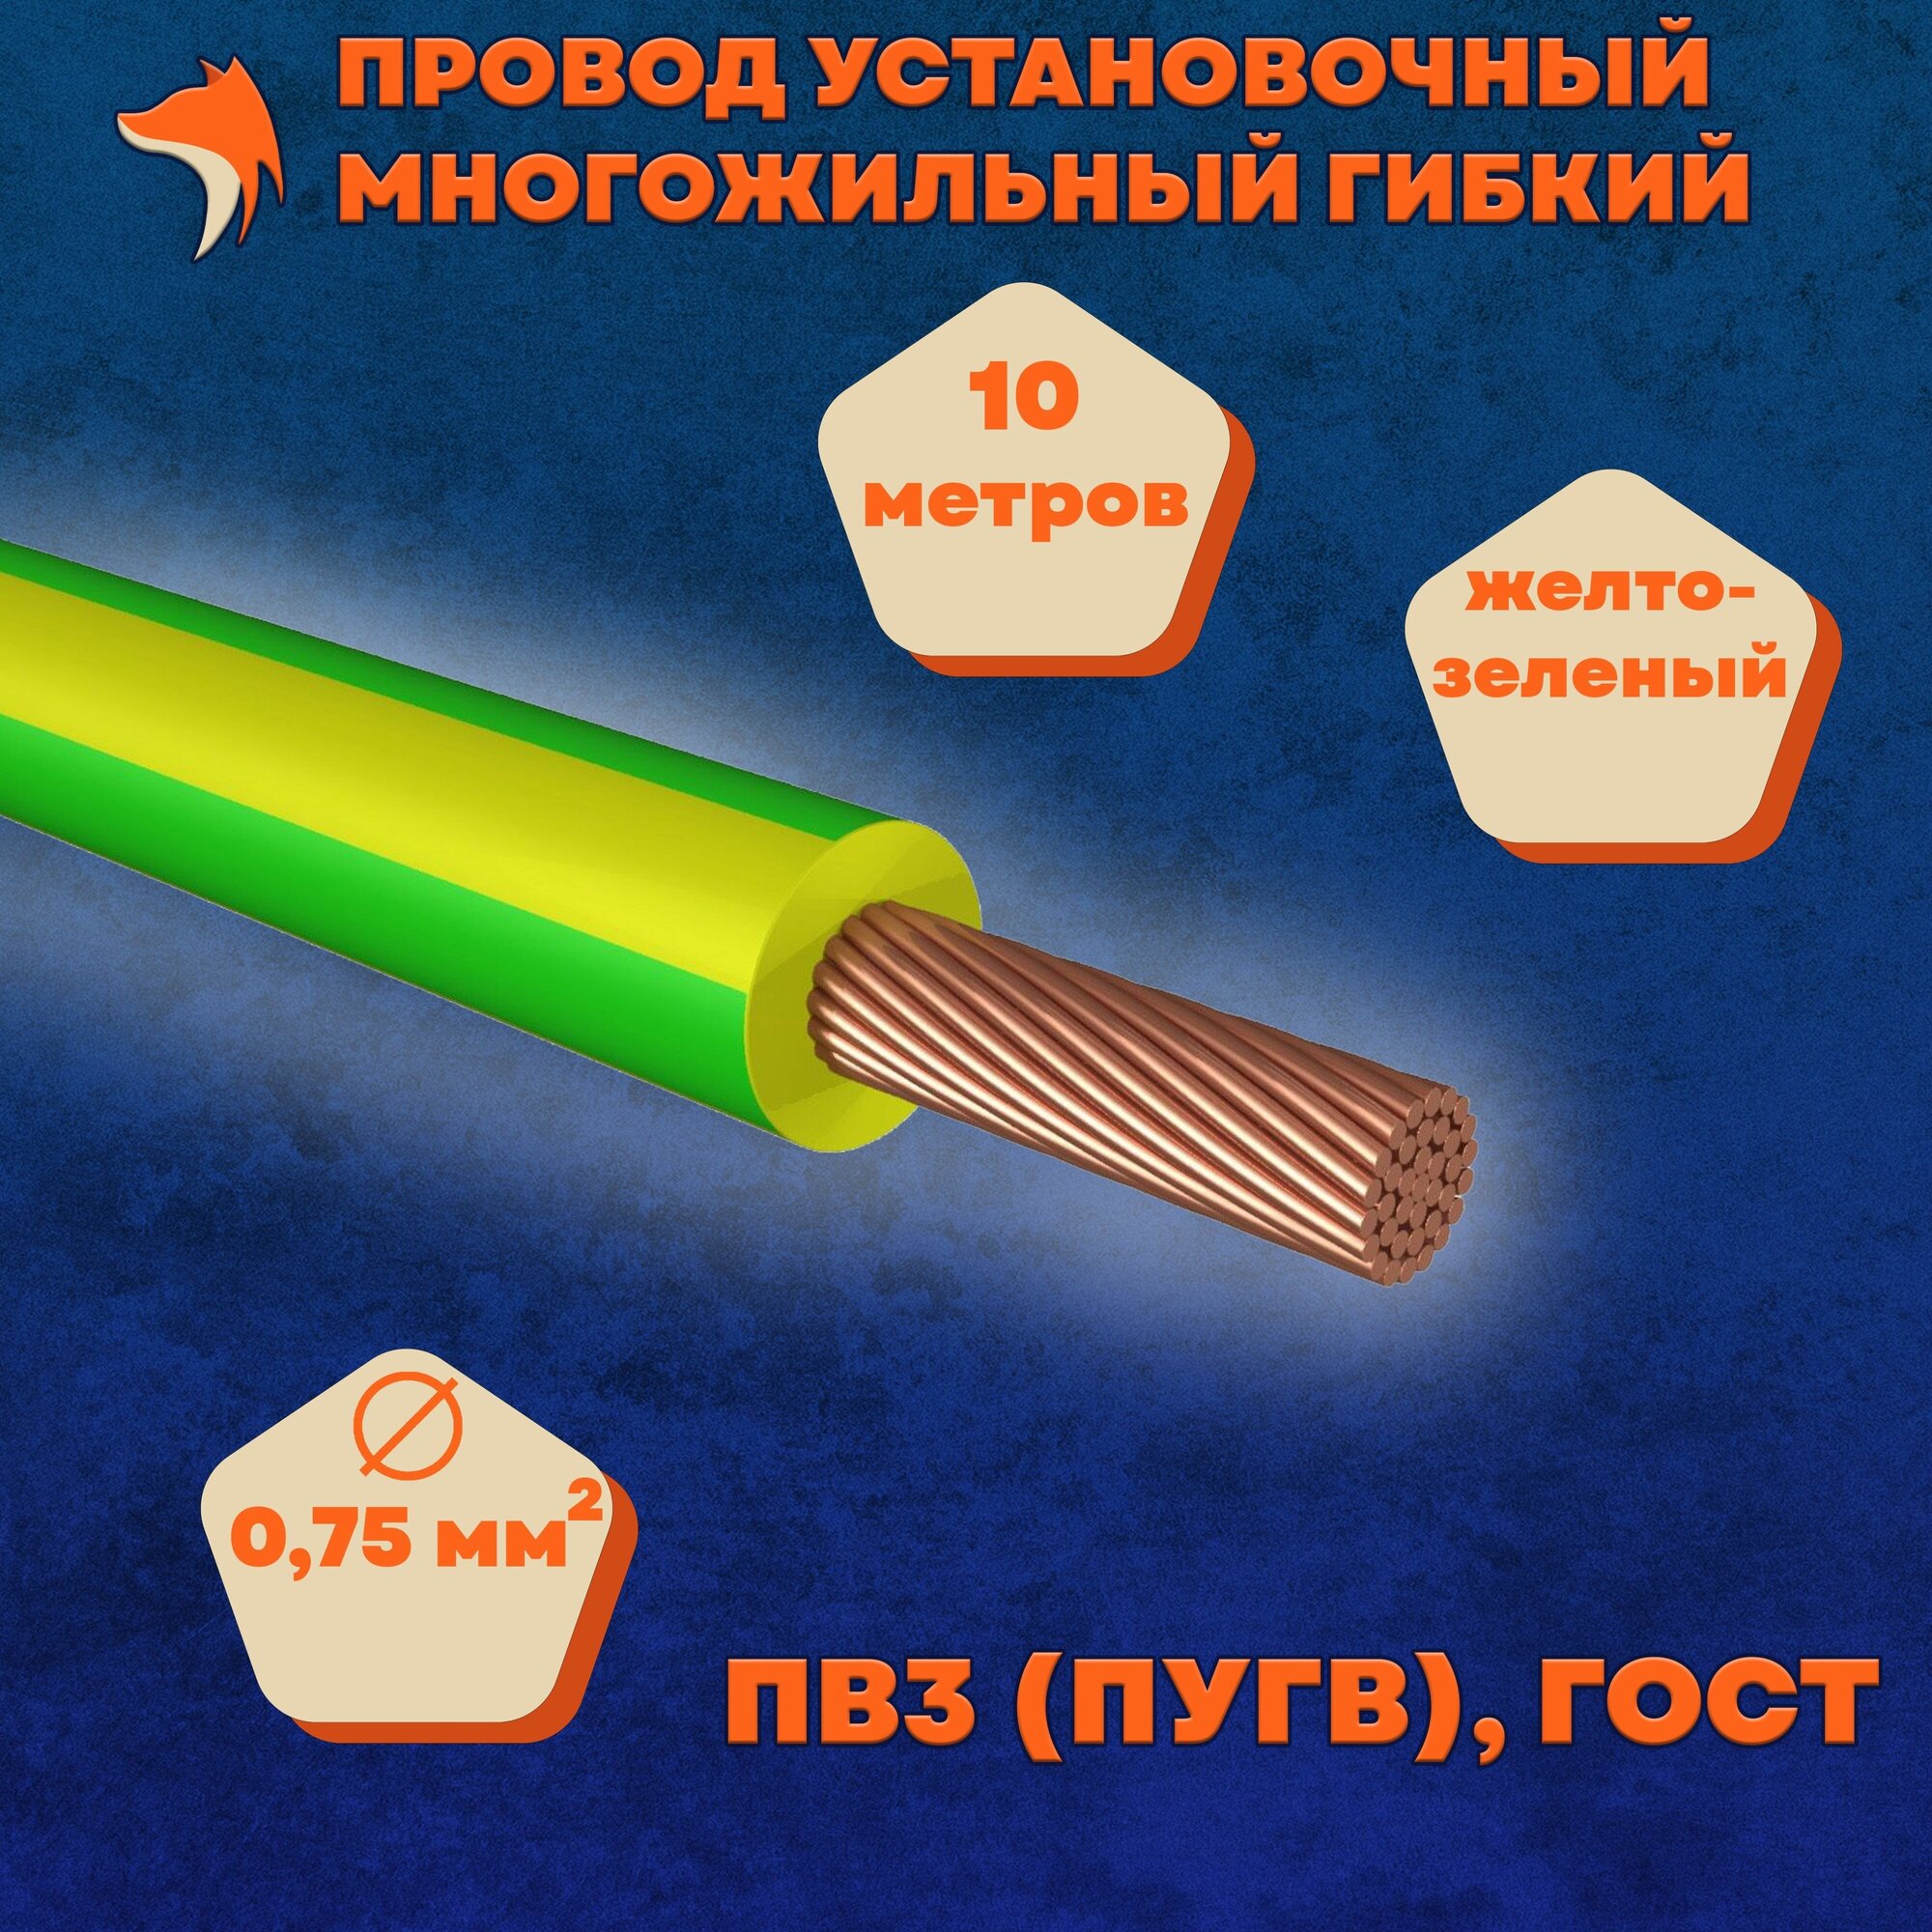 Провод установочный многожильный гибкий ПВ3 (ПуГВ) 0.75 мм , желто-зеленый, 10 метров - фотография № 1